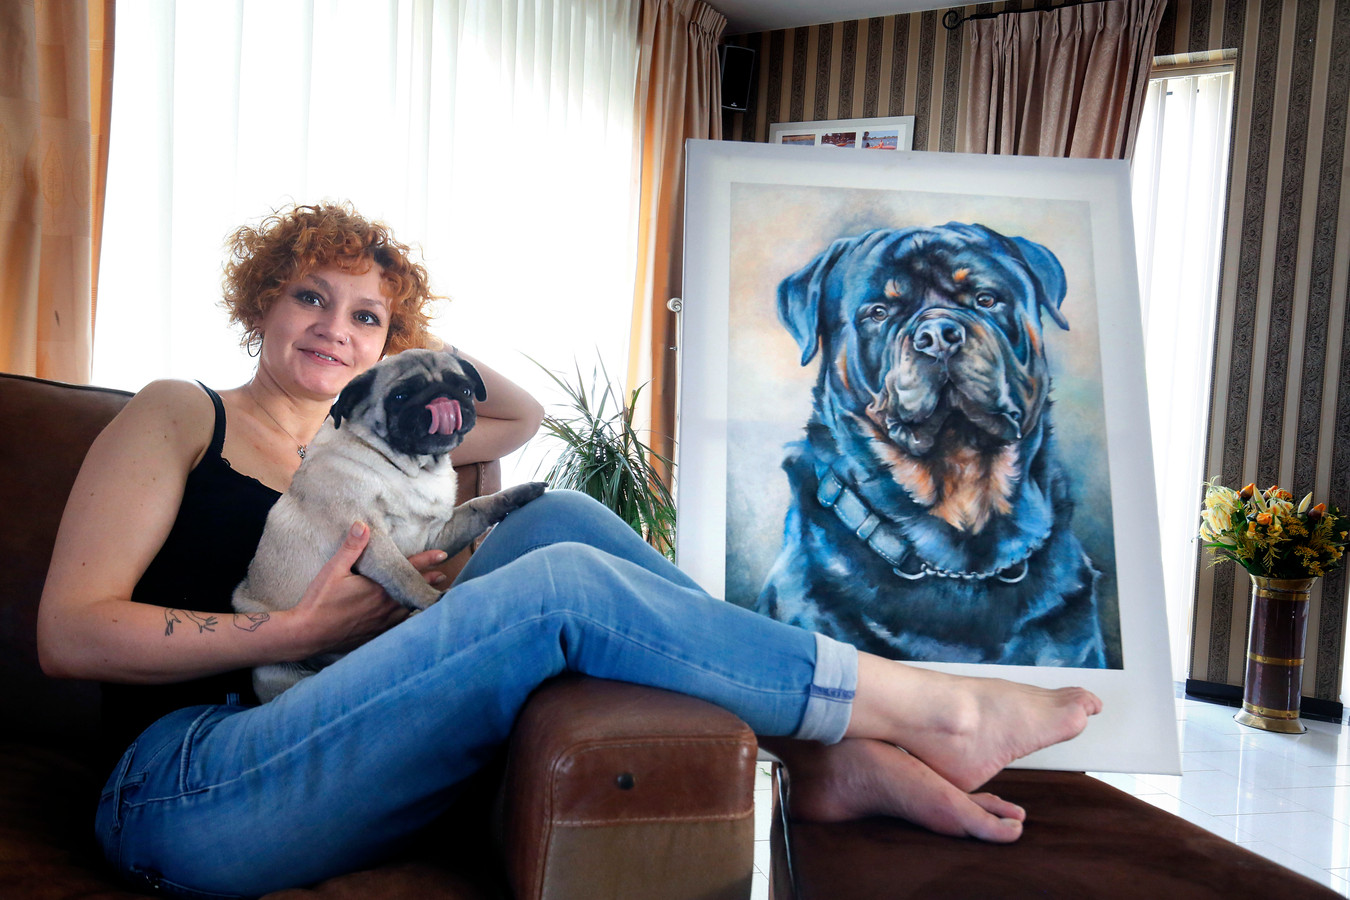 Haar hond Mia en haar tekengerei was alles wat Vika meenam op haar vlucht. De rottweiler schilderde ze uit dank voor de gastvrijheid.